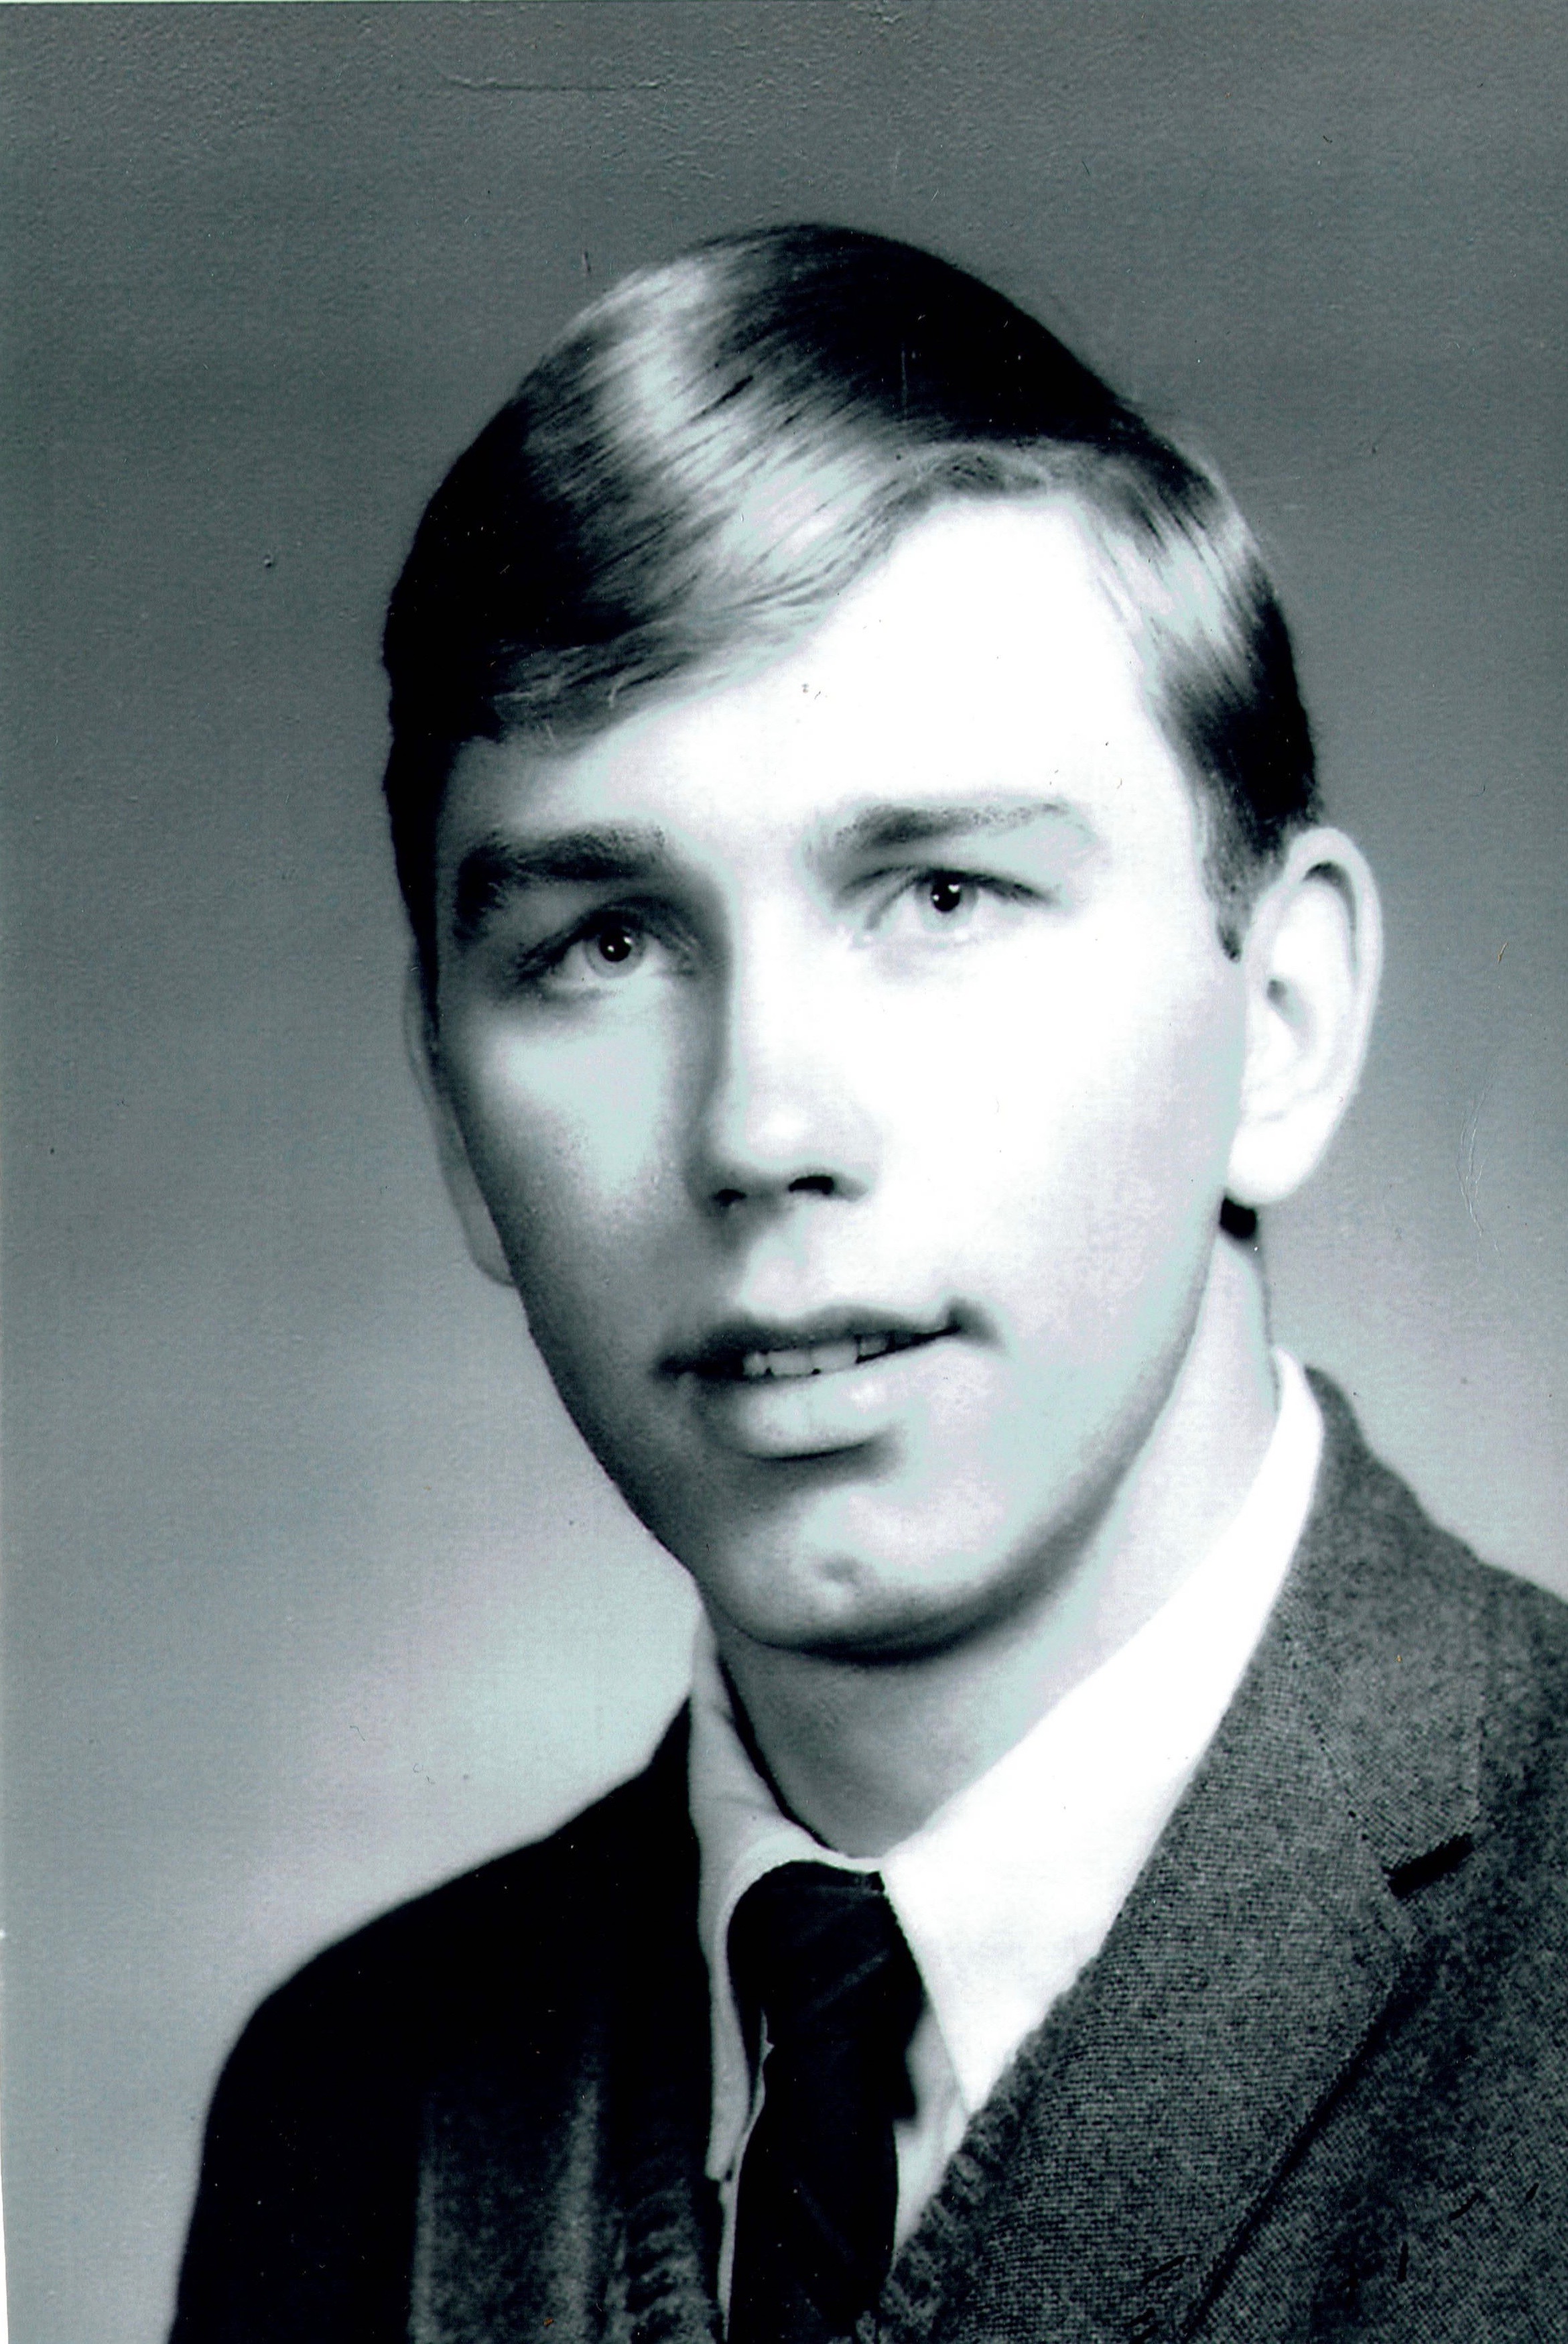 Jim Doss in 1967